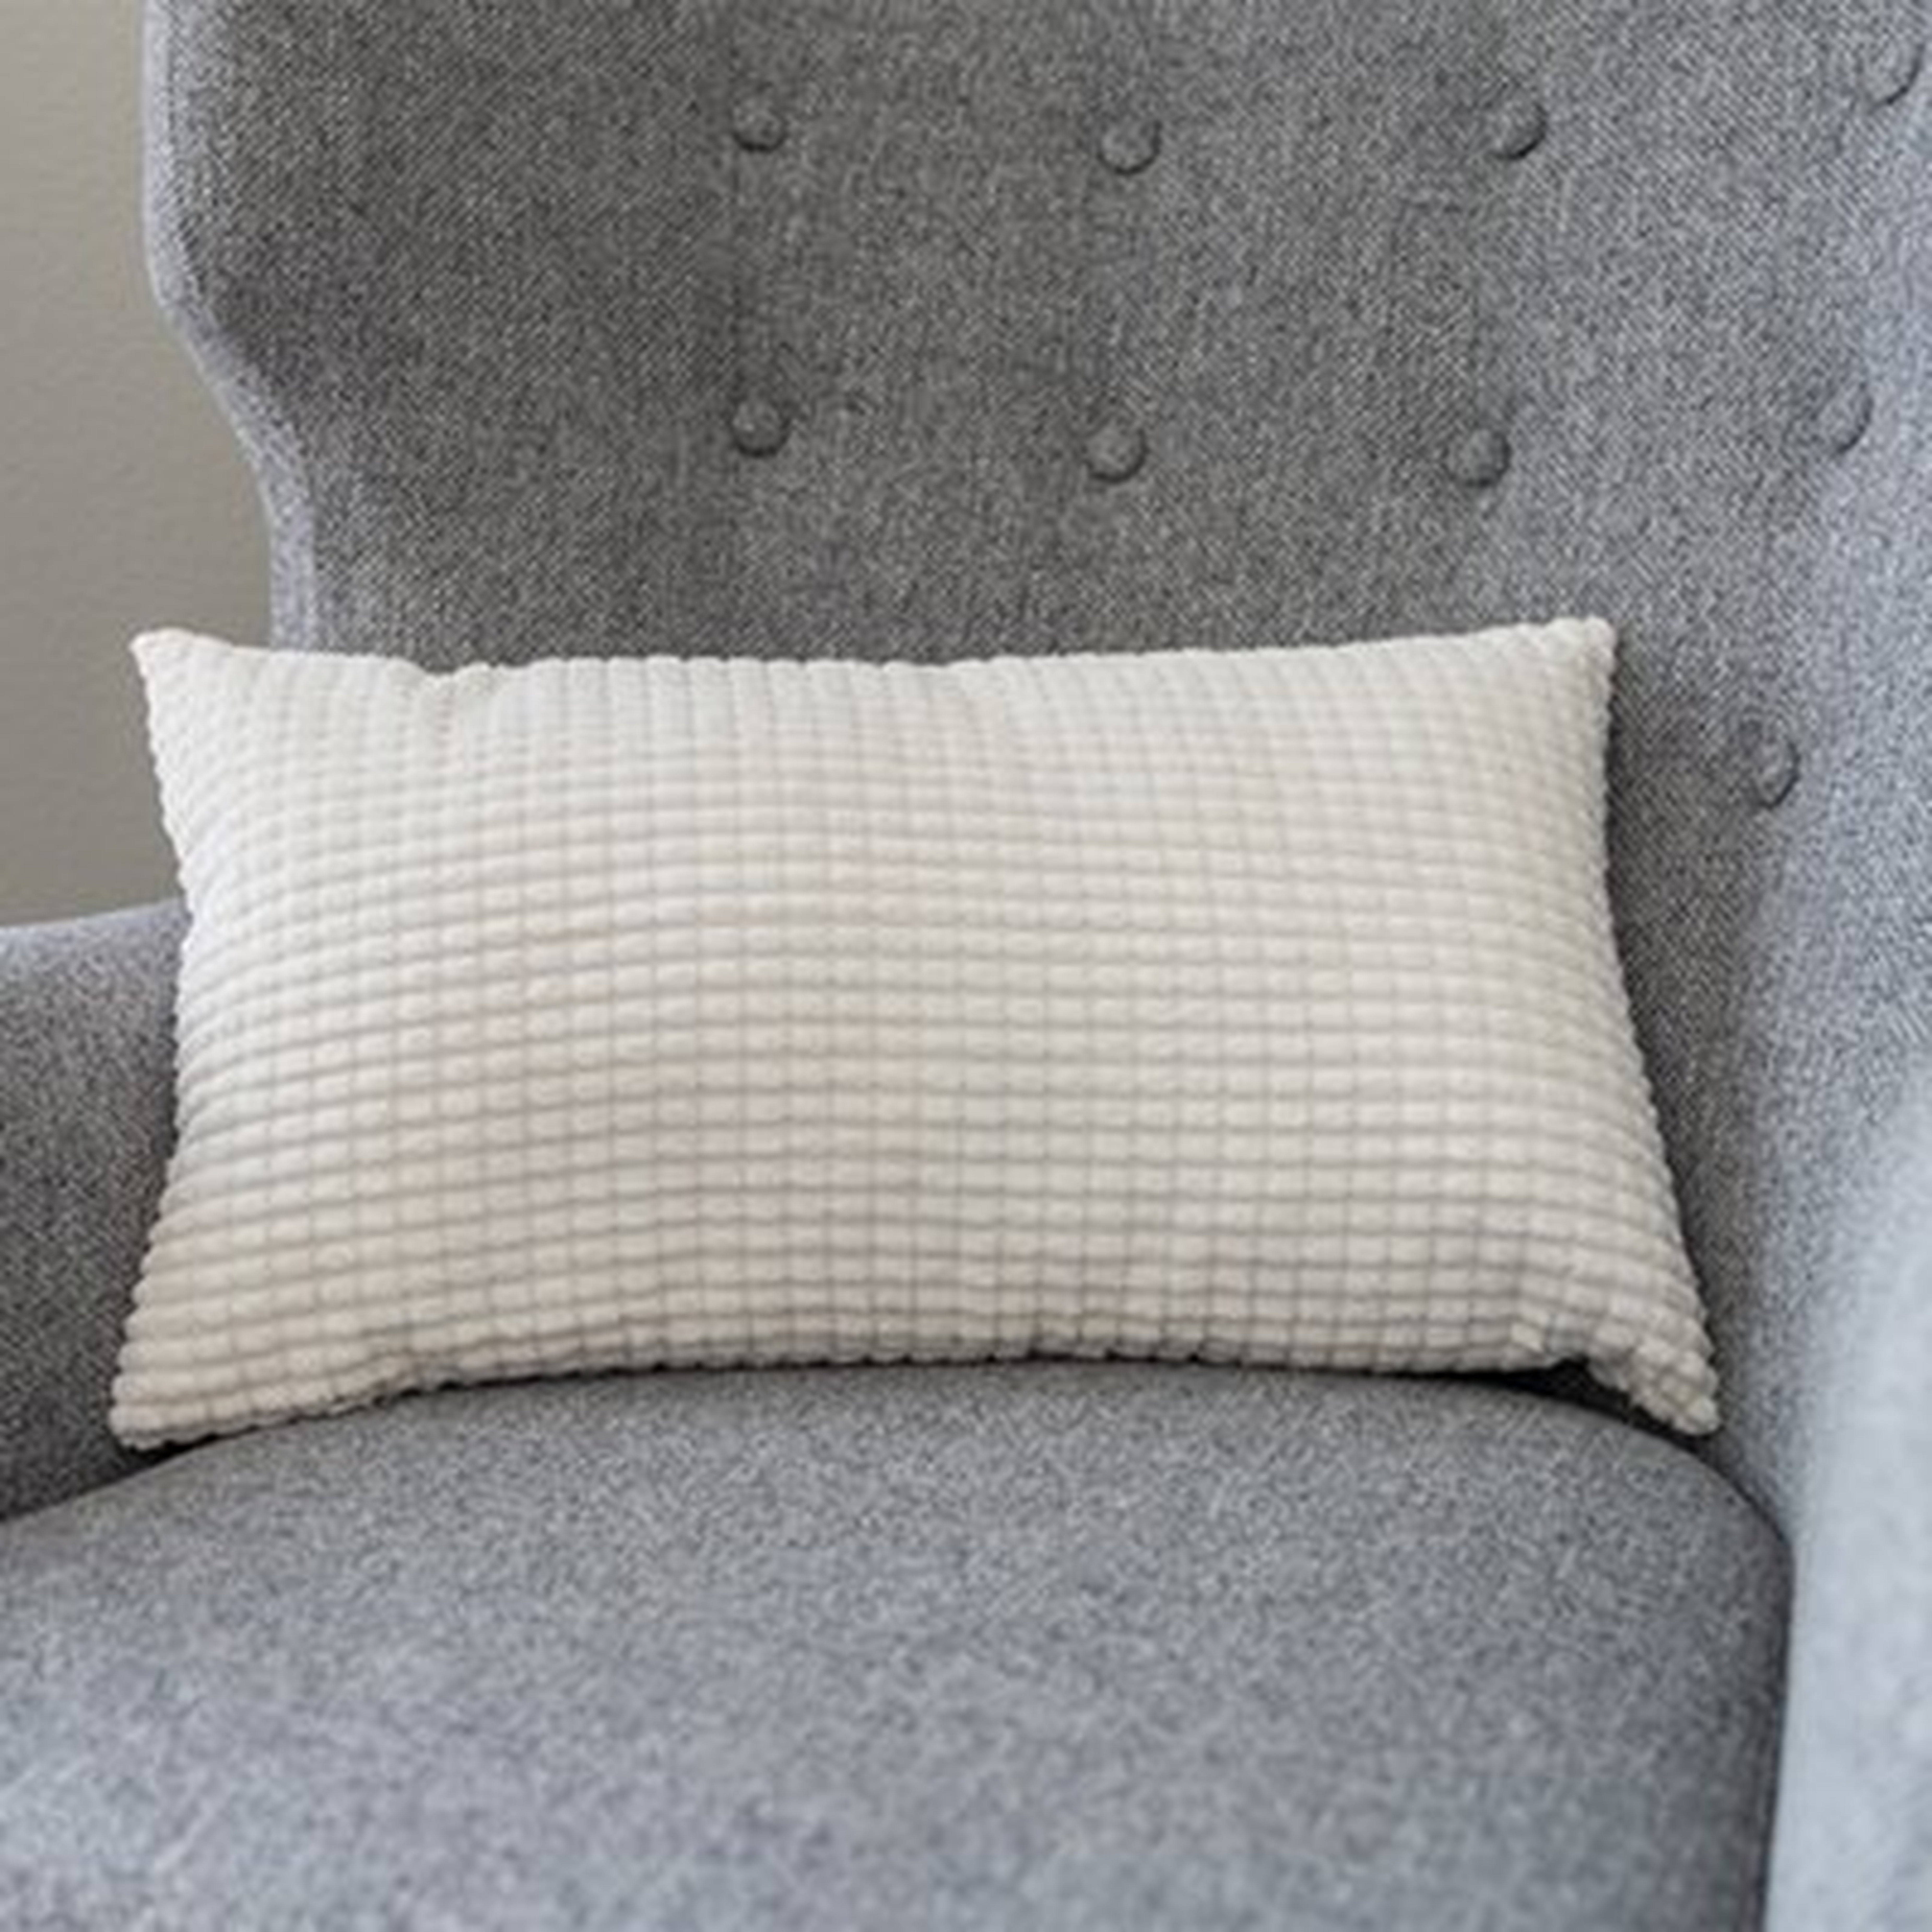 Rectangular Pillow Cover & Insert - Wayfair